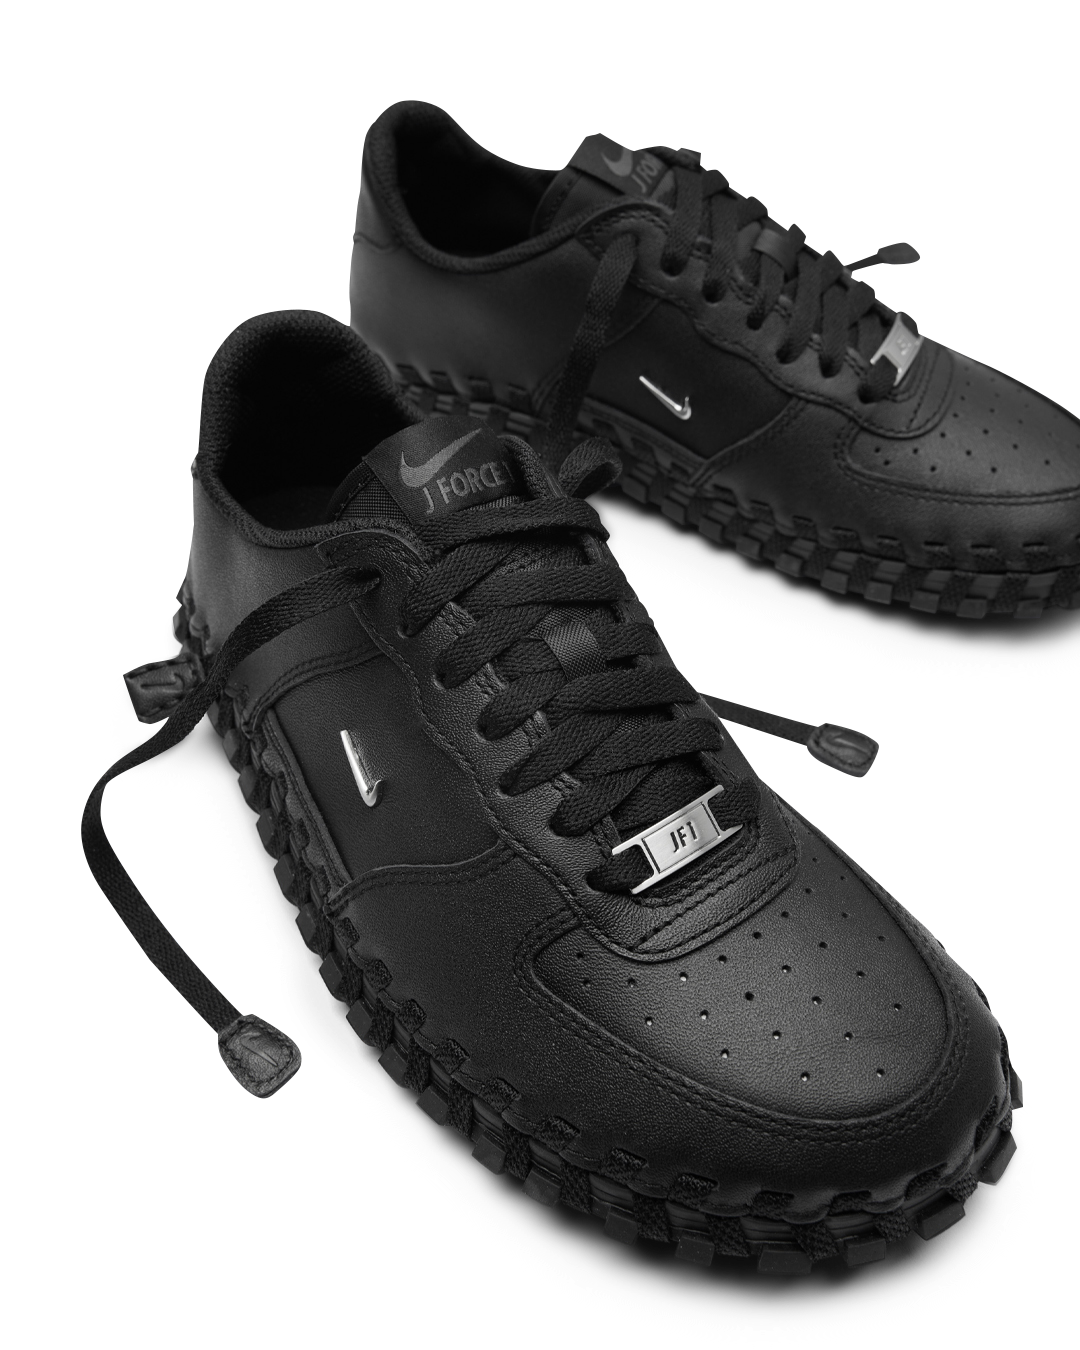 J Force 1 Low LX SP x Jacquemus $189 Nike Footwear Sneakers Black